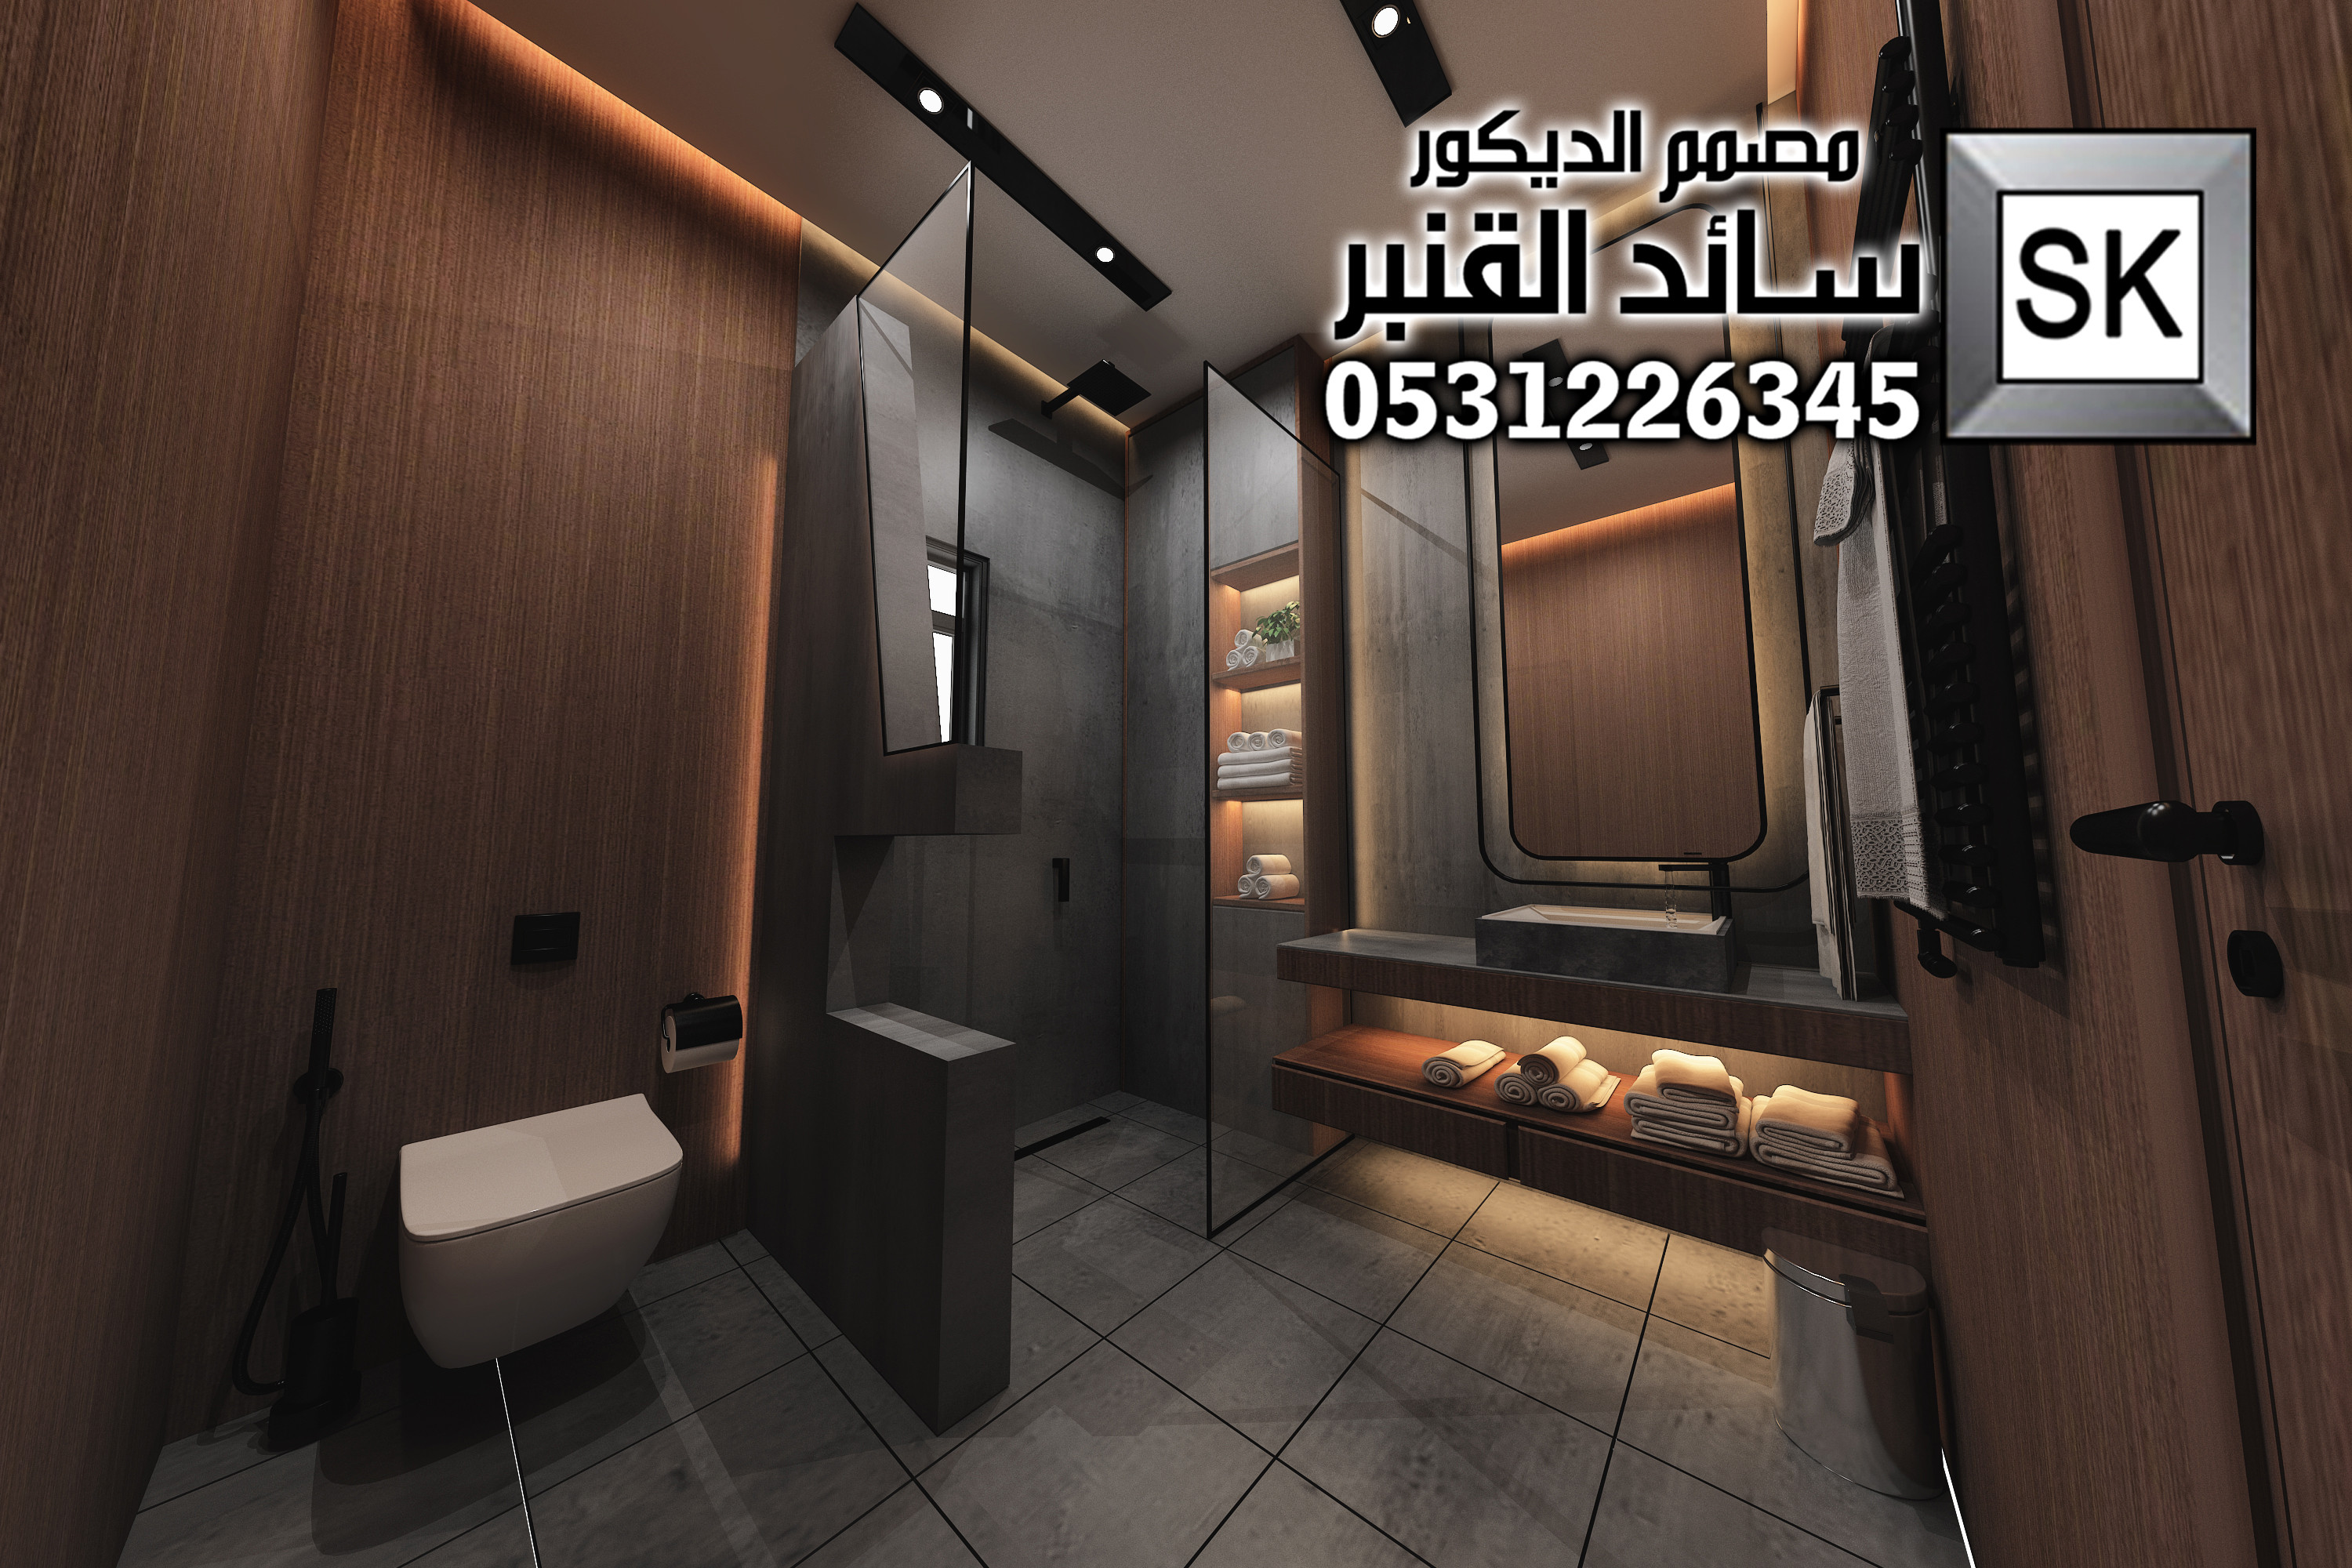 تصميم و تشطيب مغاسل و حمامات فخمة في الرياض